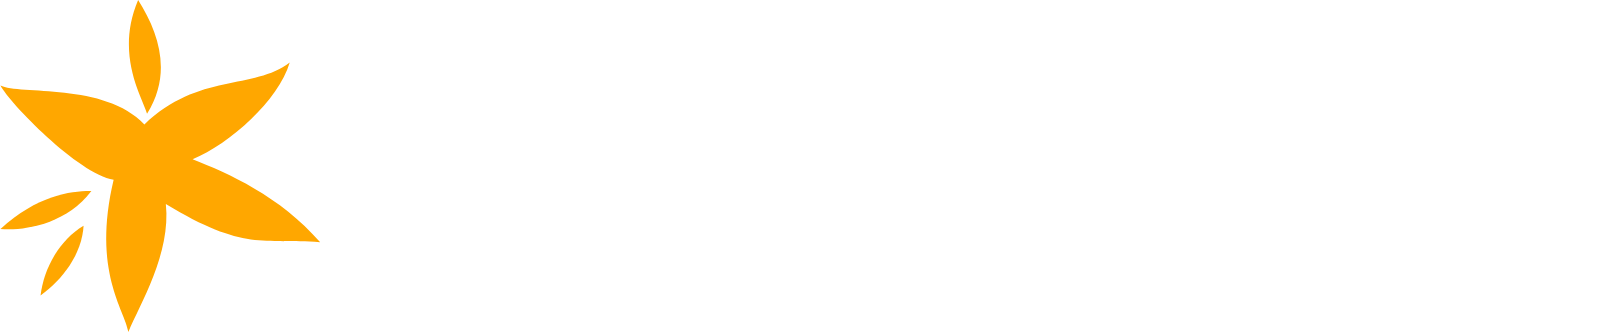 Apria logo grand pour les fonds sombres (PNG transparent)